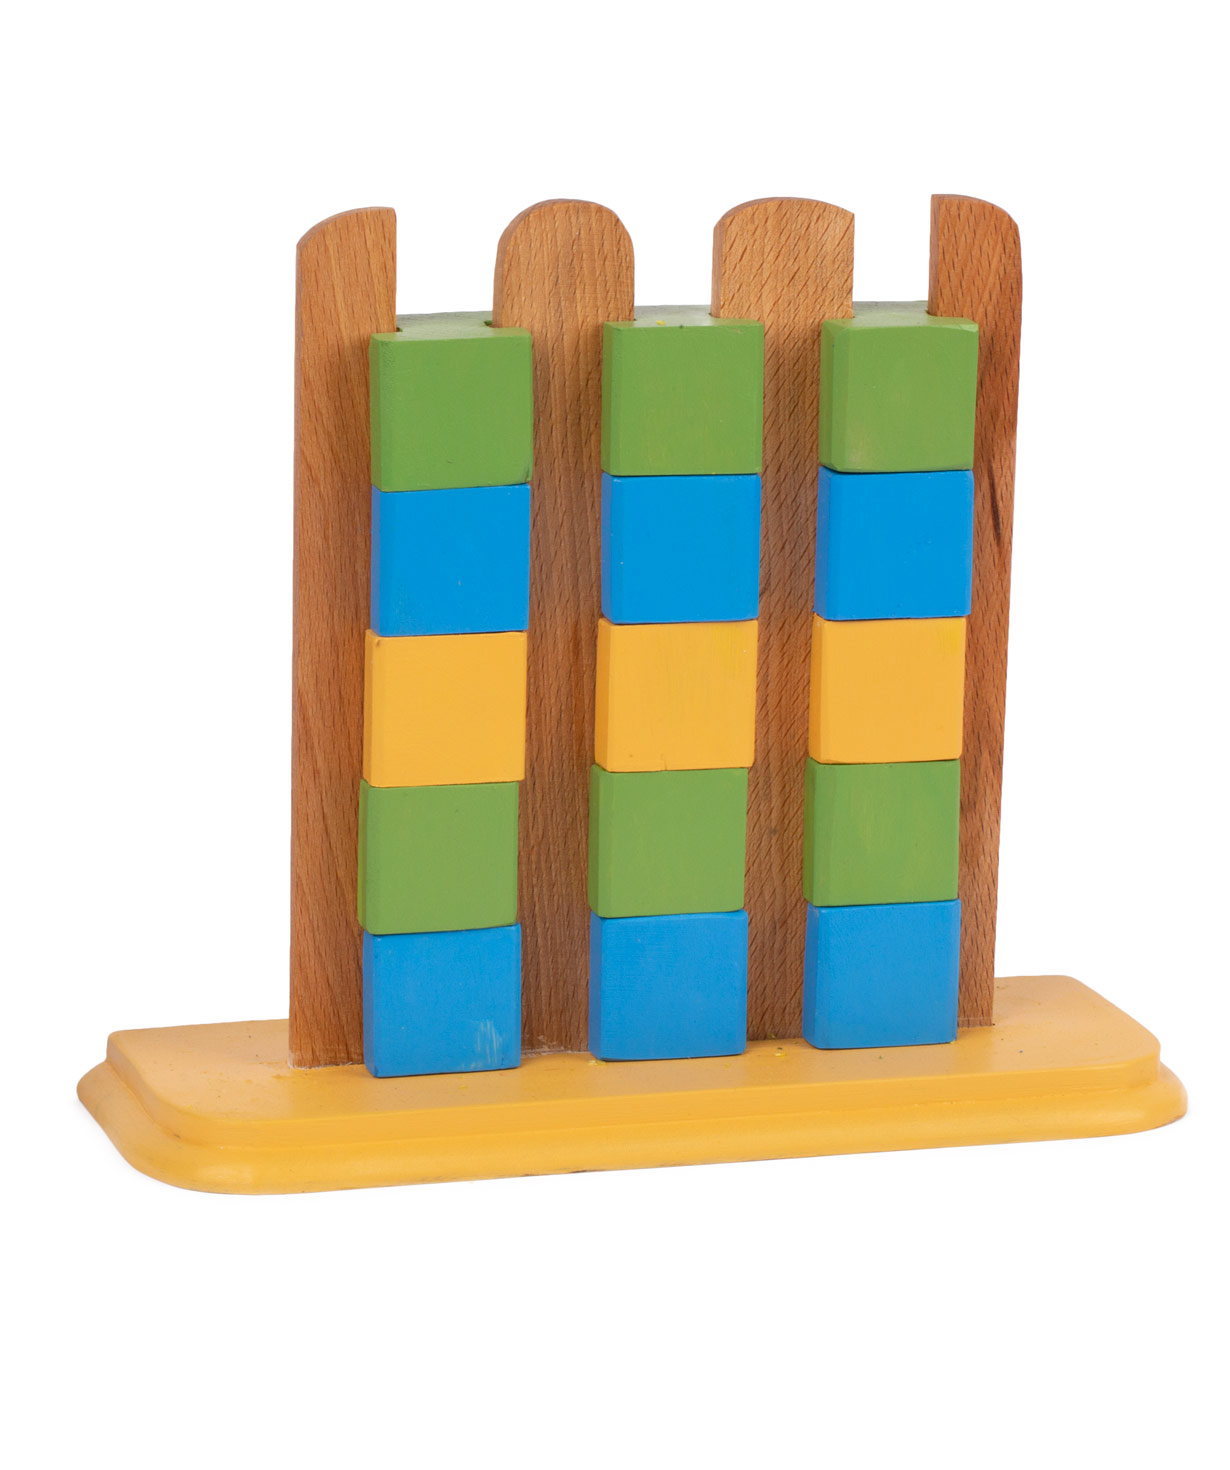 Խաղալիք «I'm wooden toys» աշտարակ խորանարդիկներով